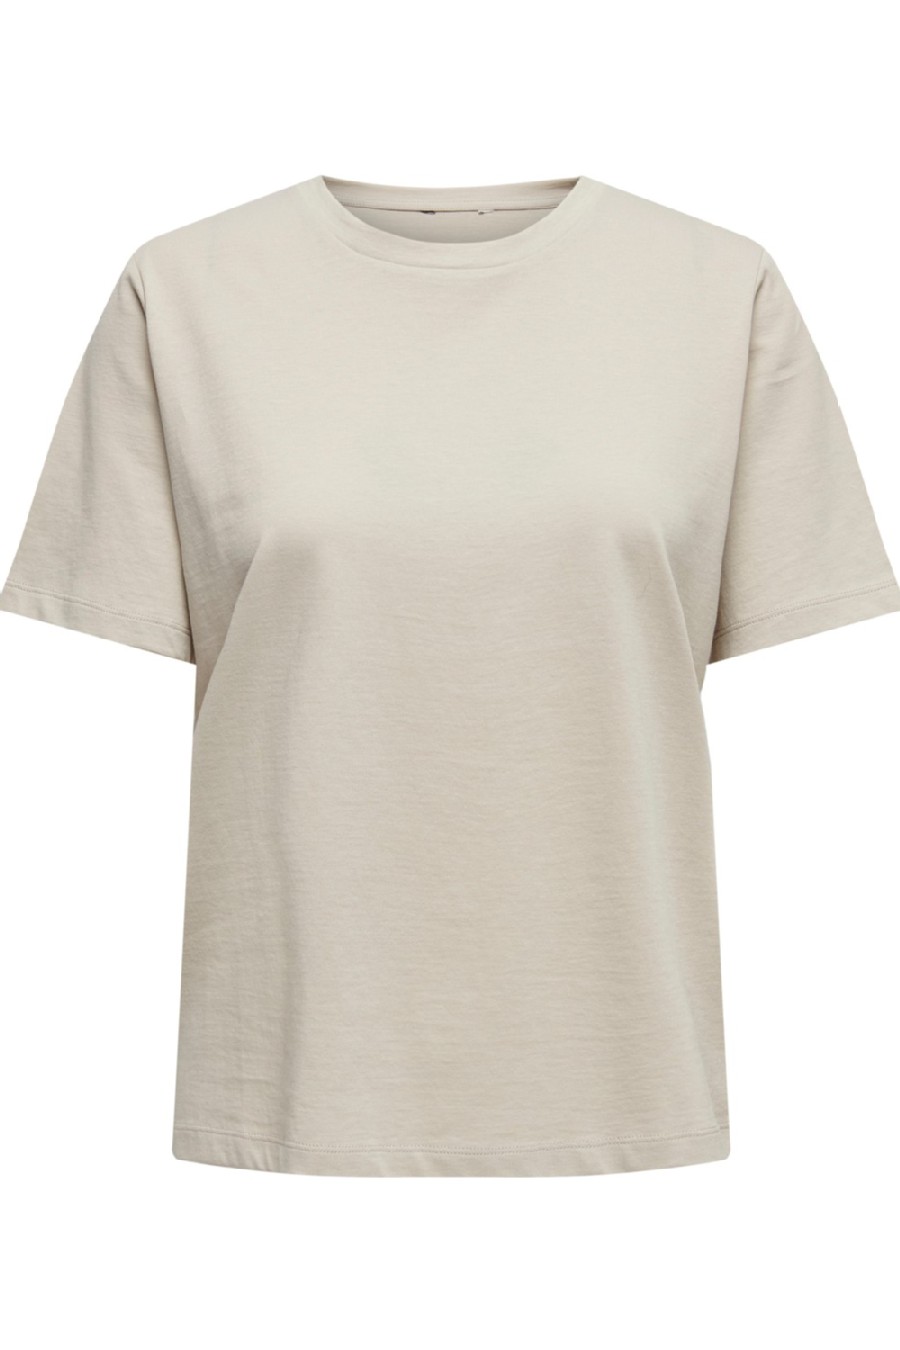 Marškinėliai ONLY 15270390-Silver-Lining